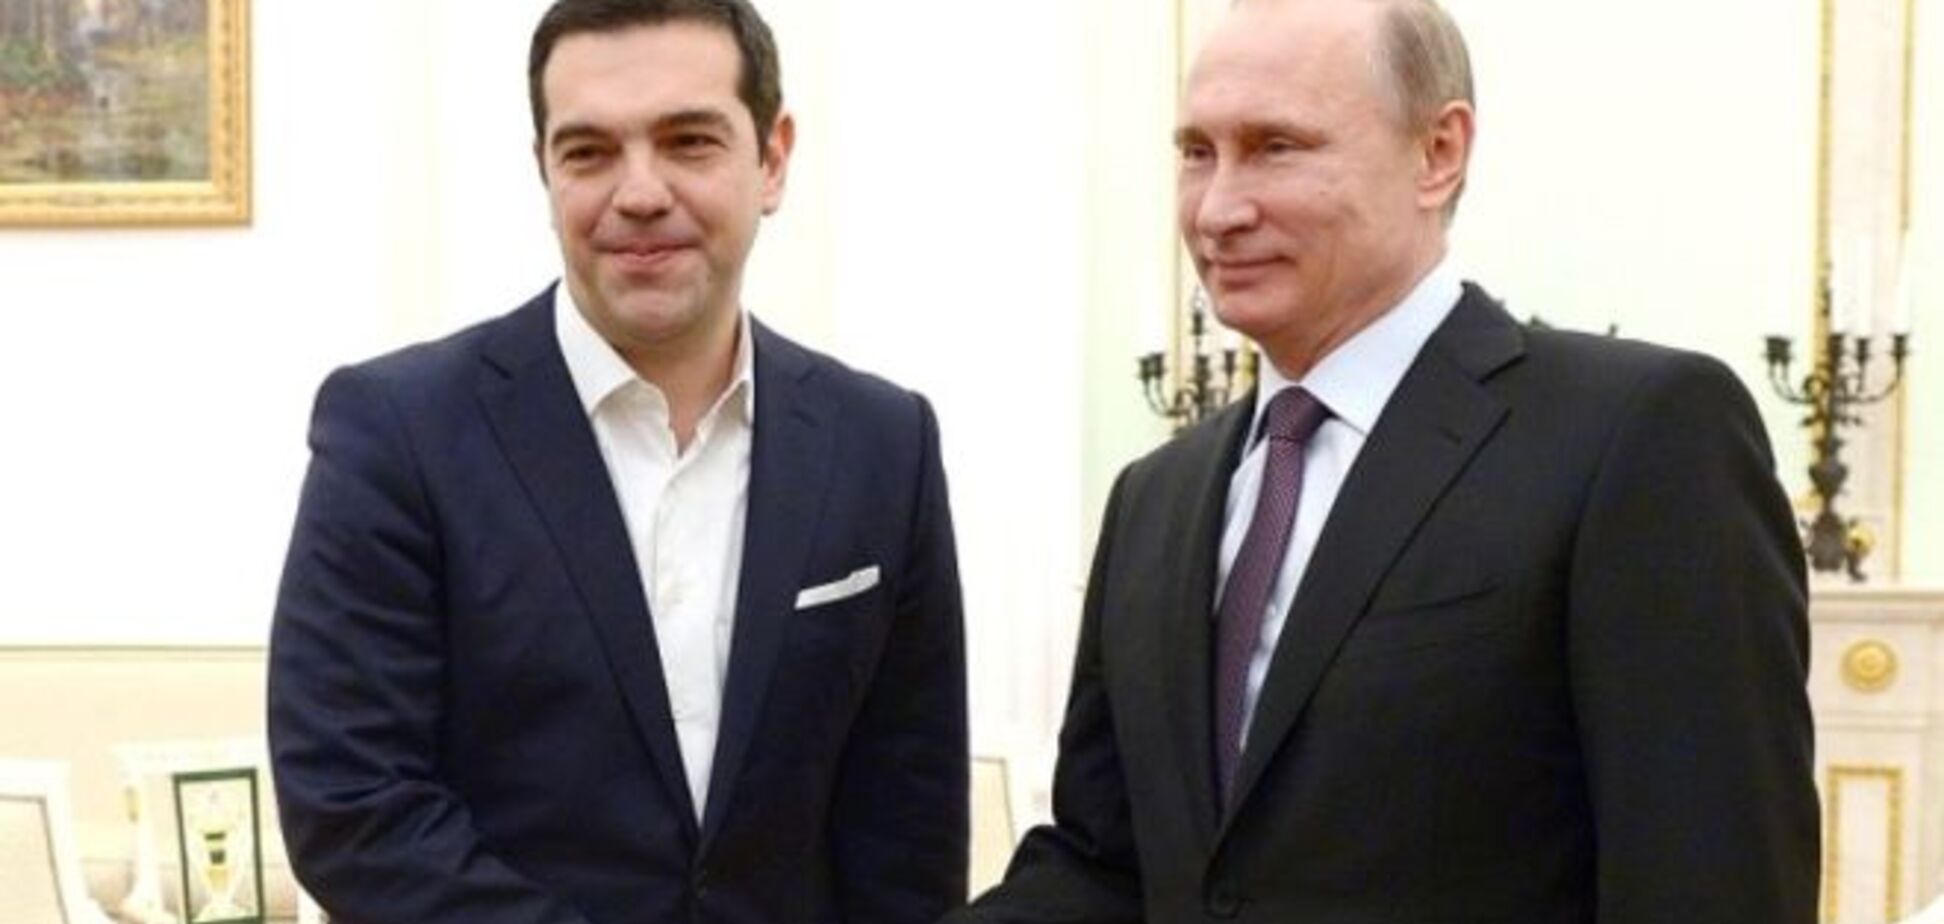 Комментатор CNBC заявил о 'потоке дерьма' из уст Ципраса и Путина